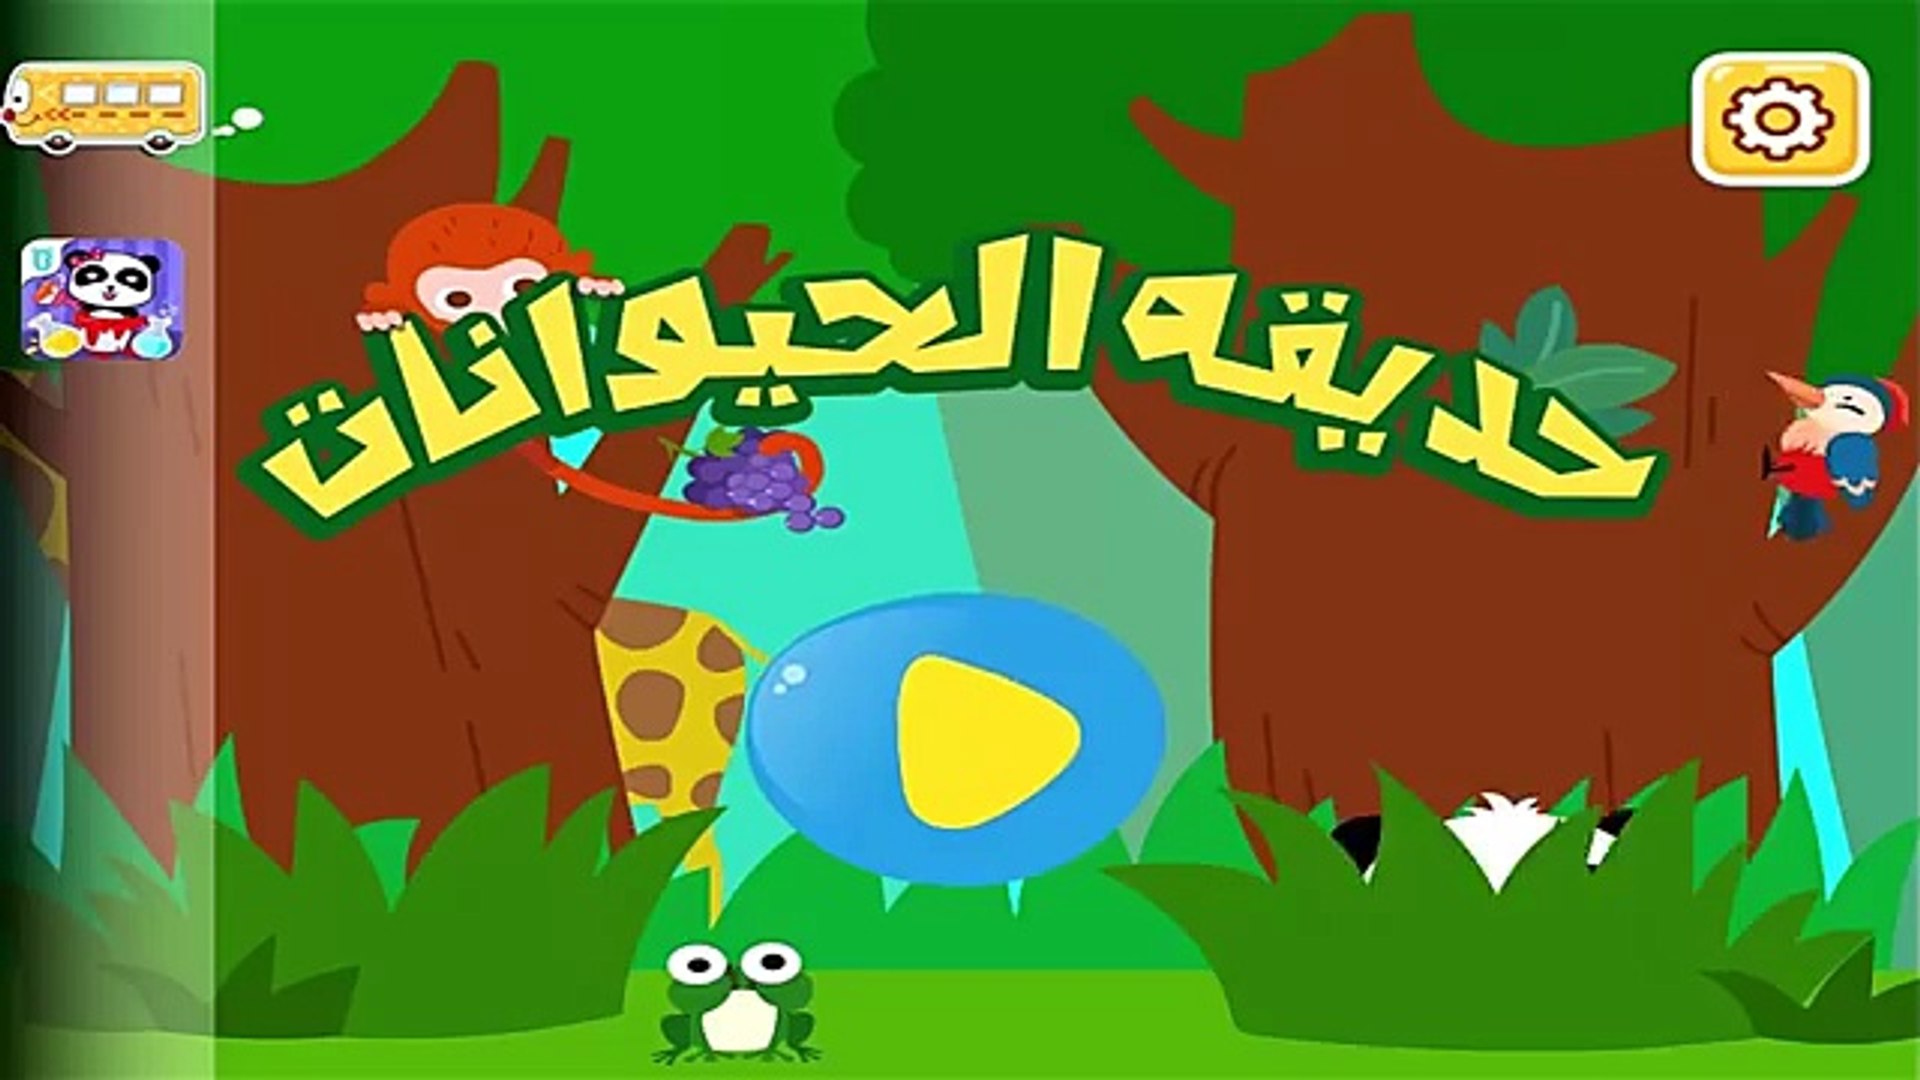 ⁣العاب اطفال تعليم الالوان بالعربية للاطفال و تعلم اسماء واصوات الحيوانات العاب تعليمية